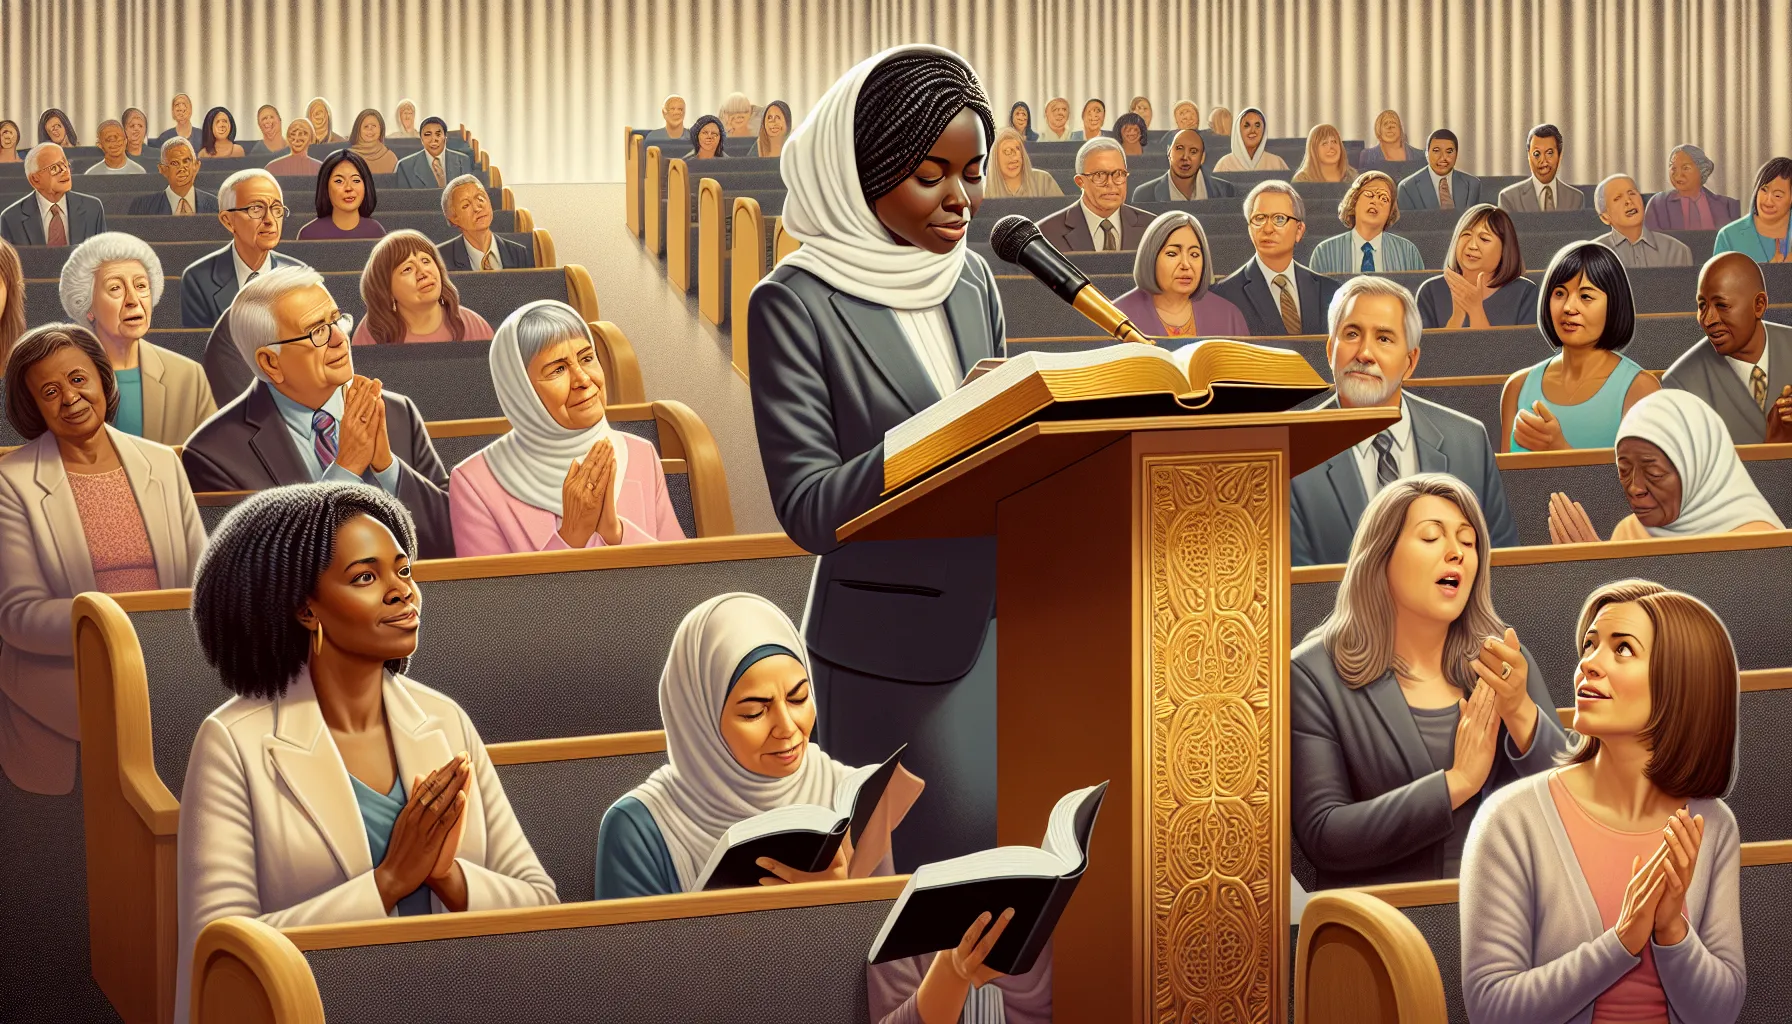 Imagen ilustrando la participación femenina en reuniones eclesiásticas.